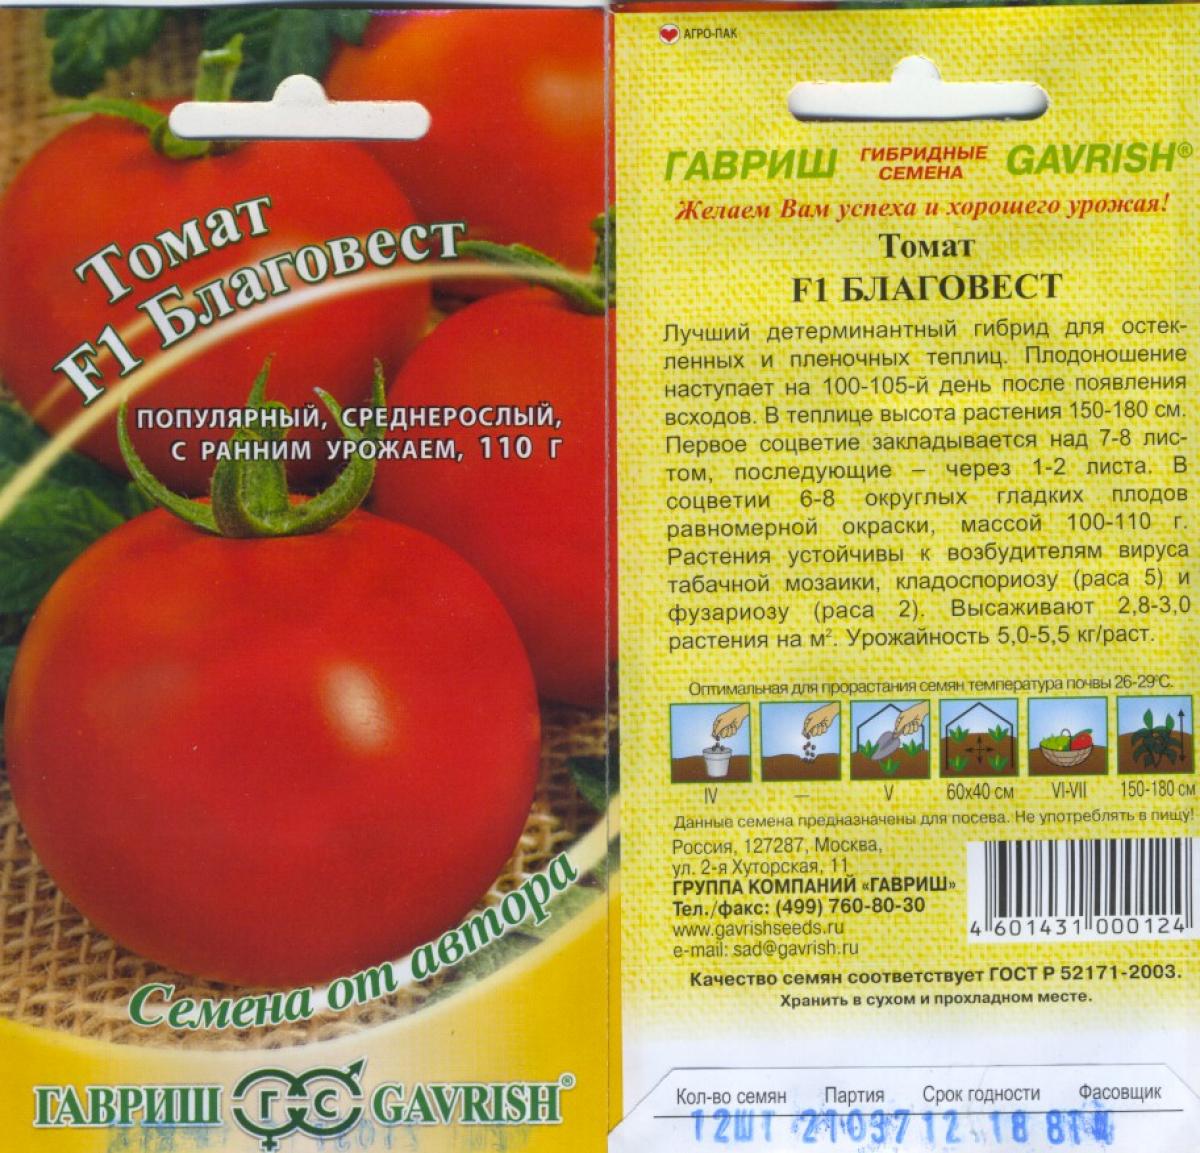 Томат дружок f1: отзывы дачников со стажем, характеристика и описание сорта помидоров, методика его выращивания